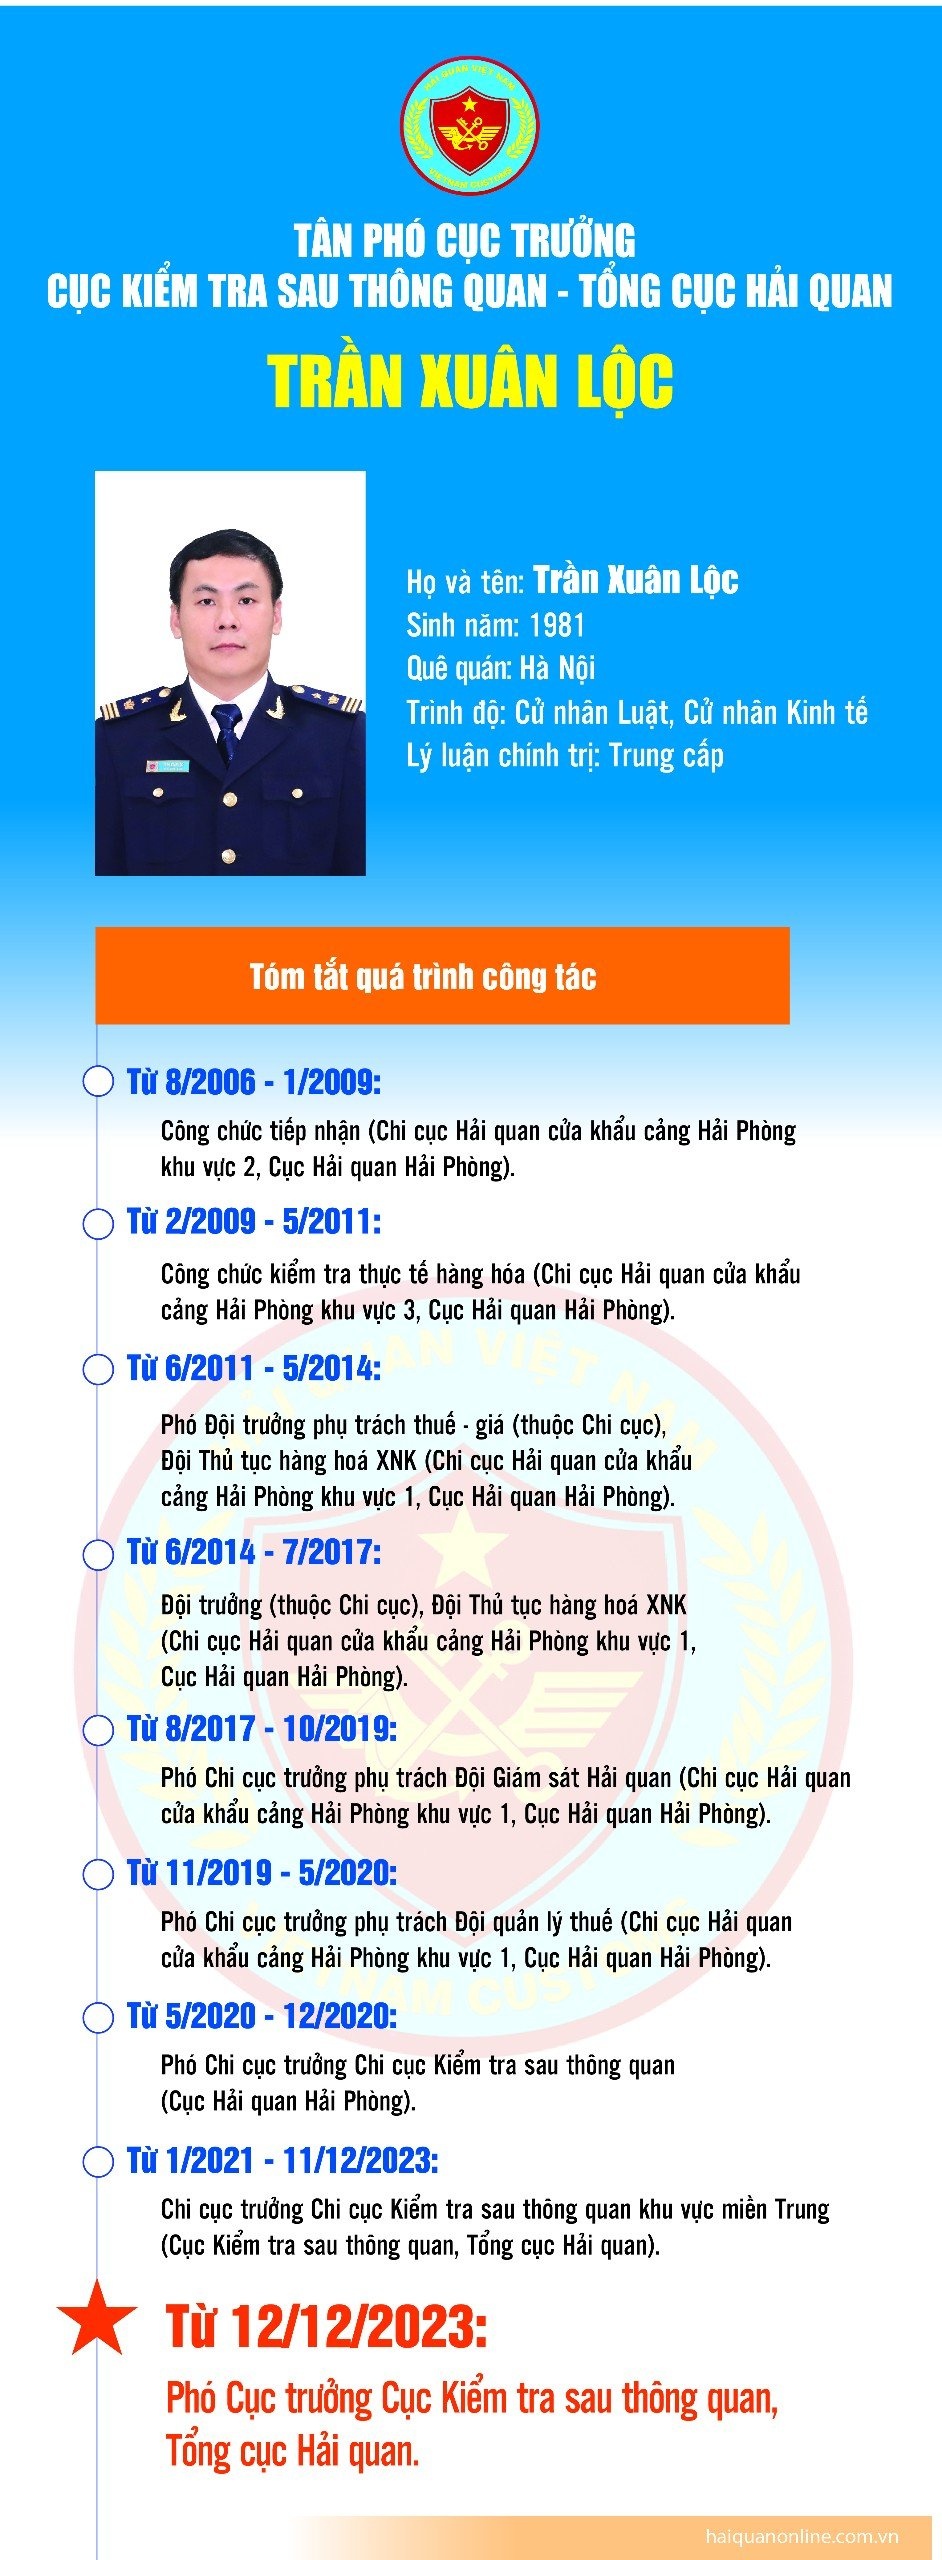 Infographics: Quá trình công tác của tân Phó Cục trưởng KTSTQ Trần Xuân Lộc